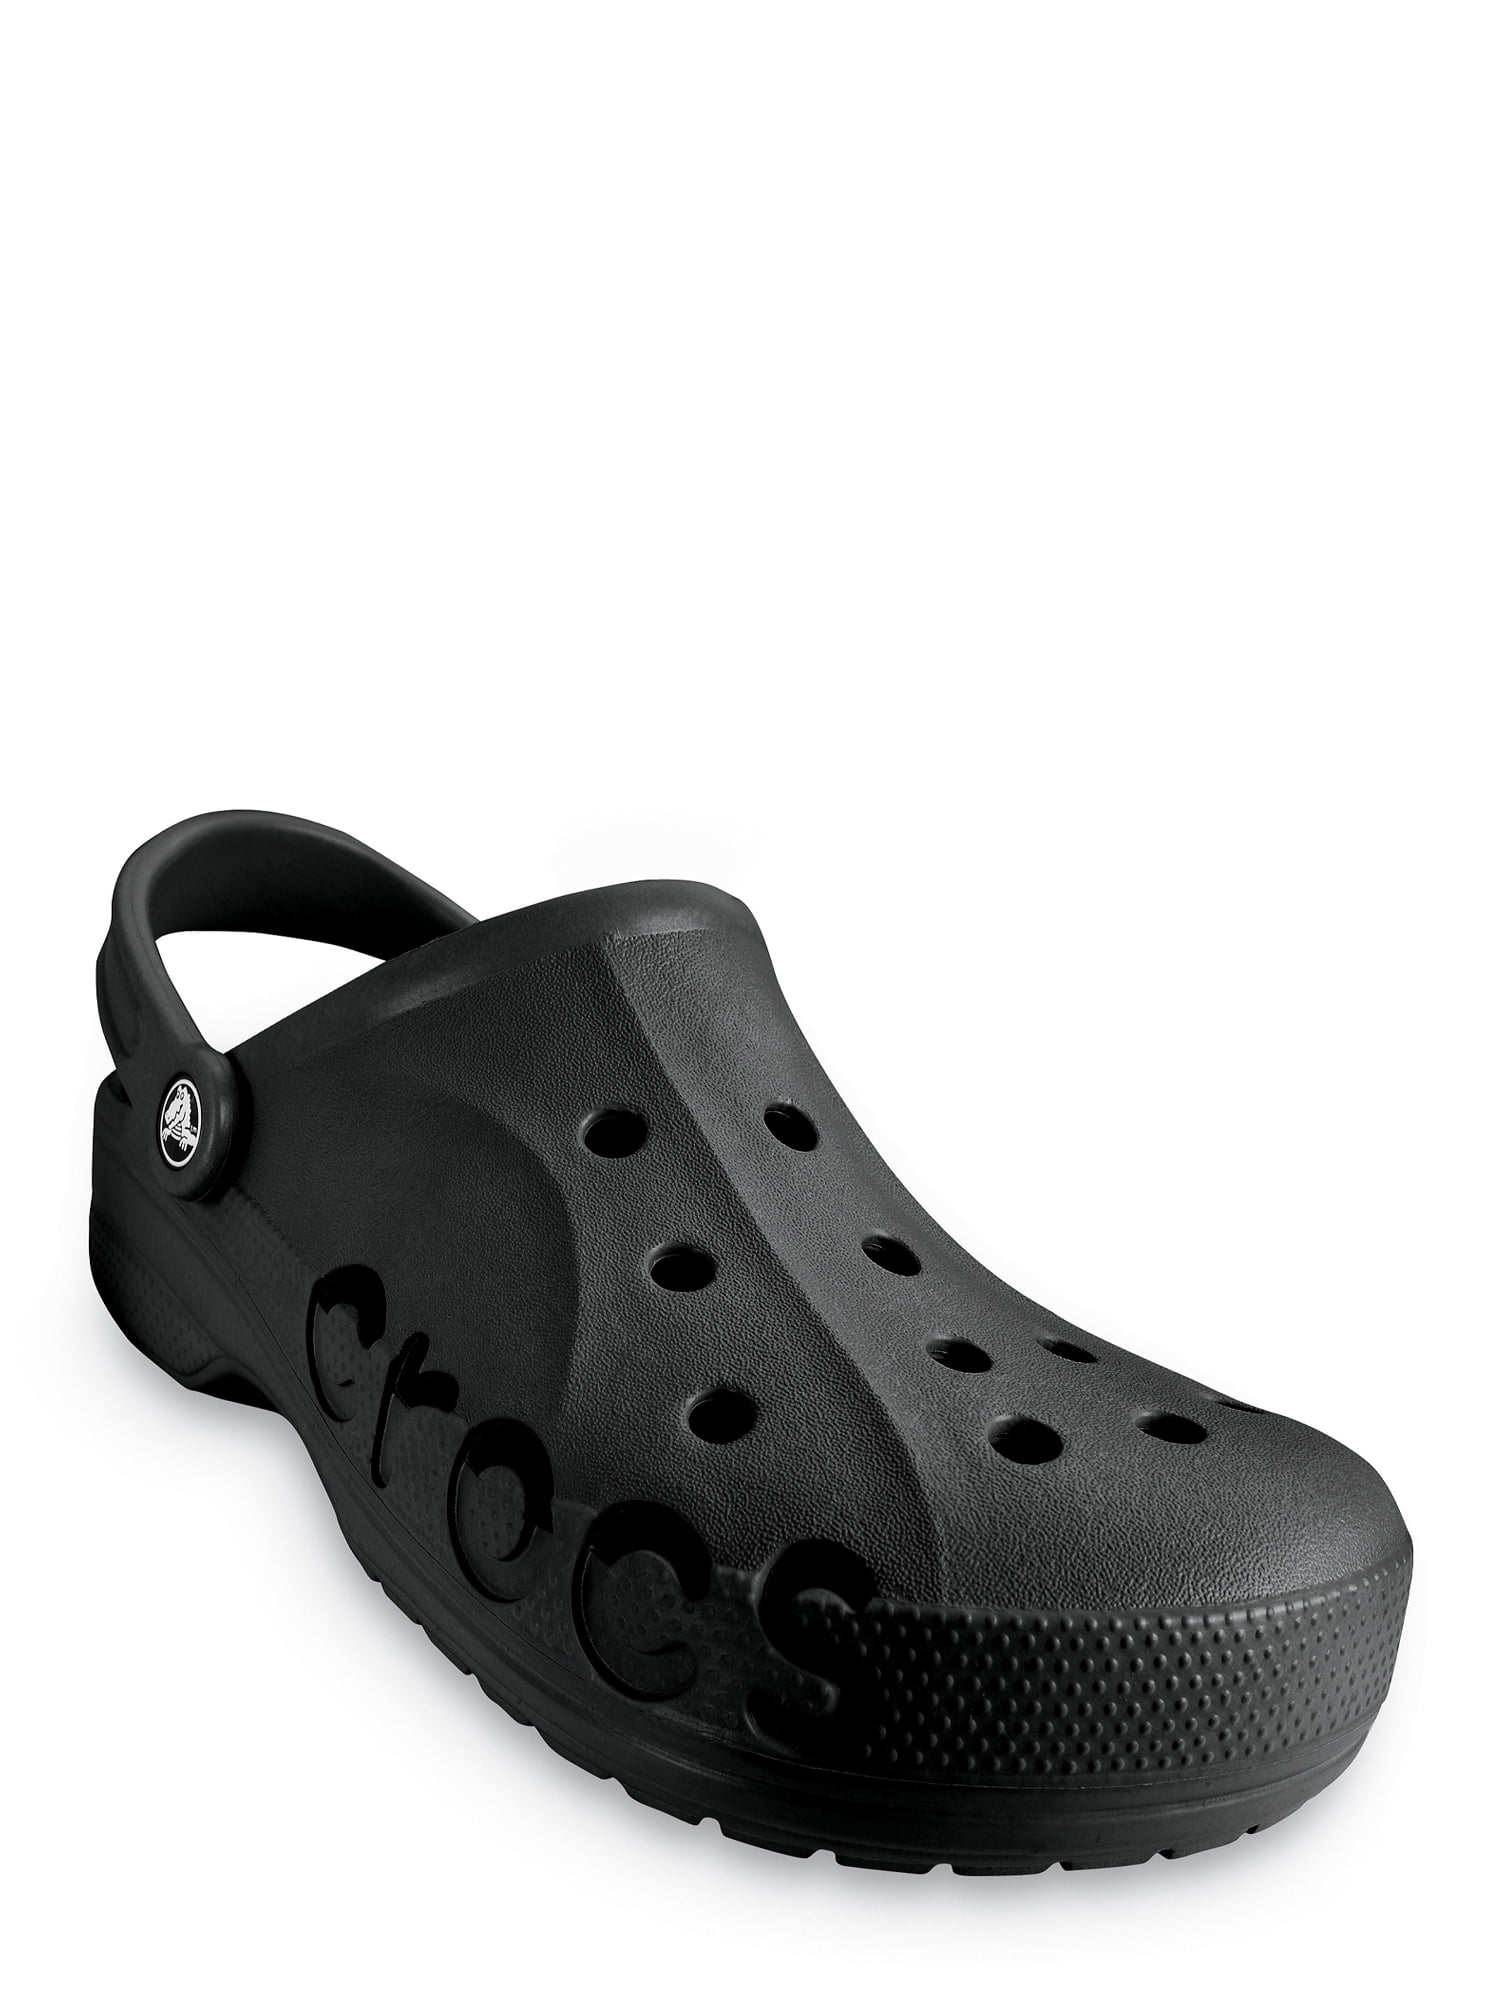 crocs for men walmart